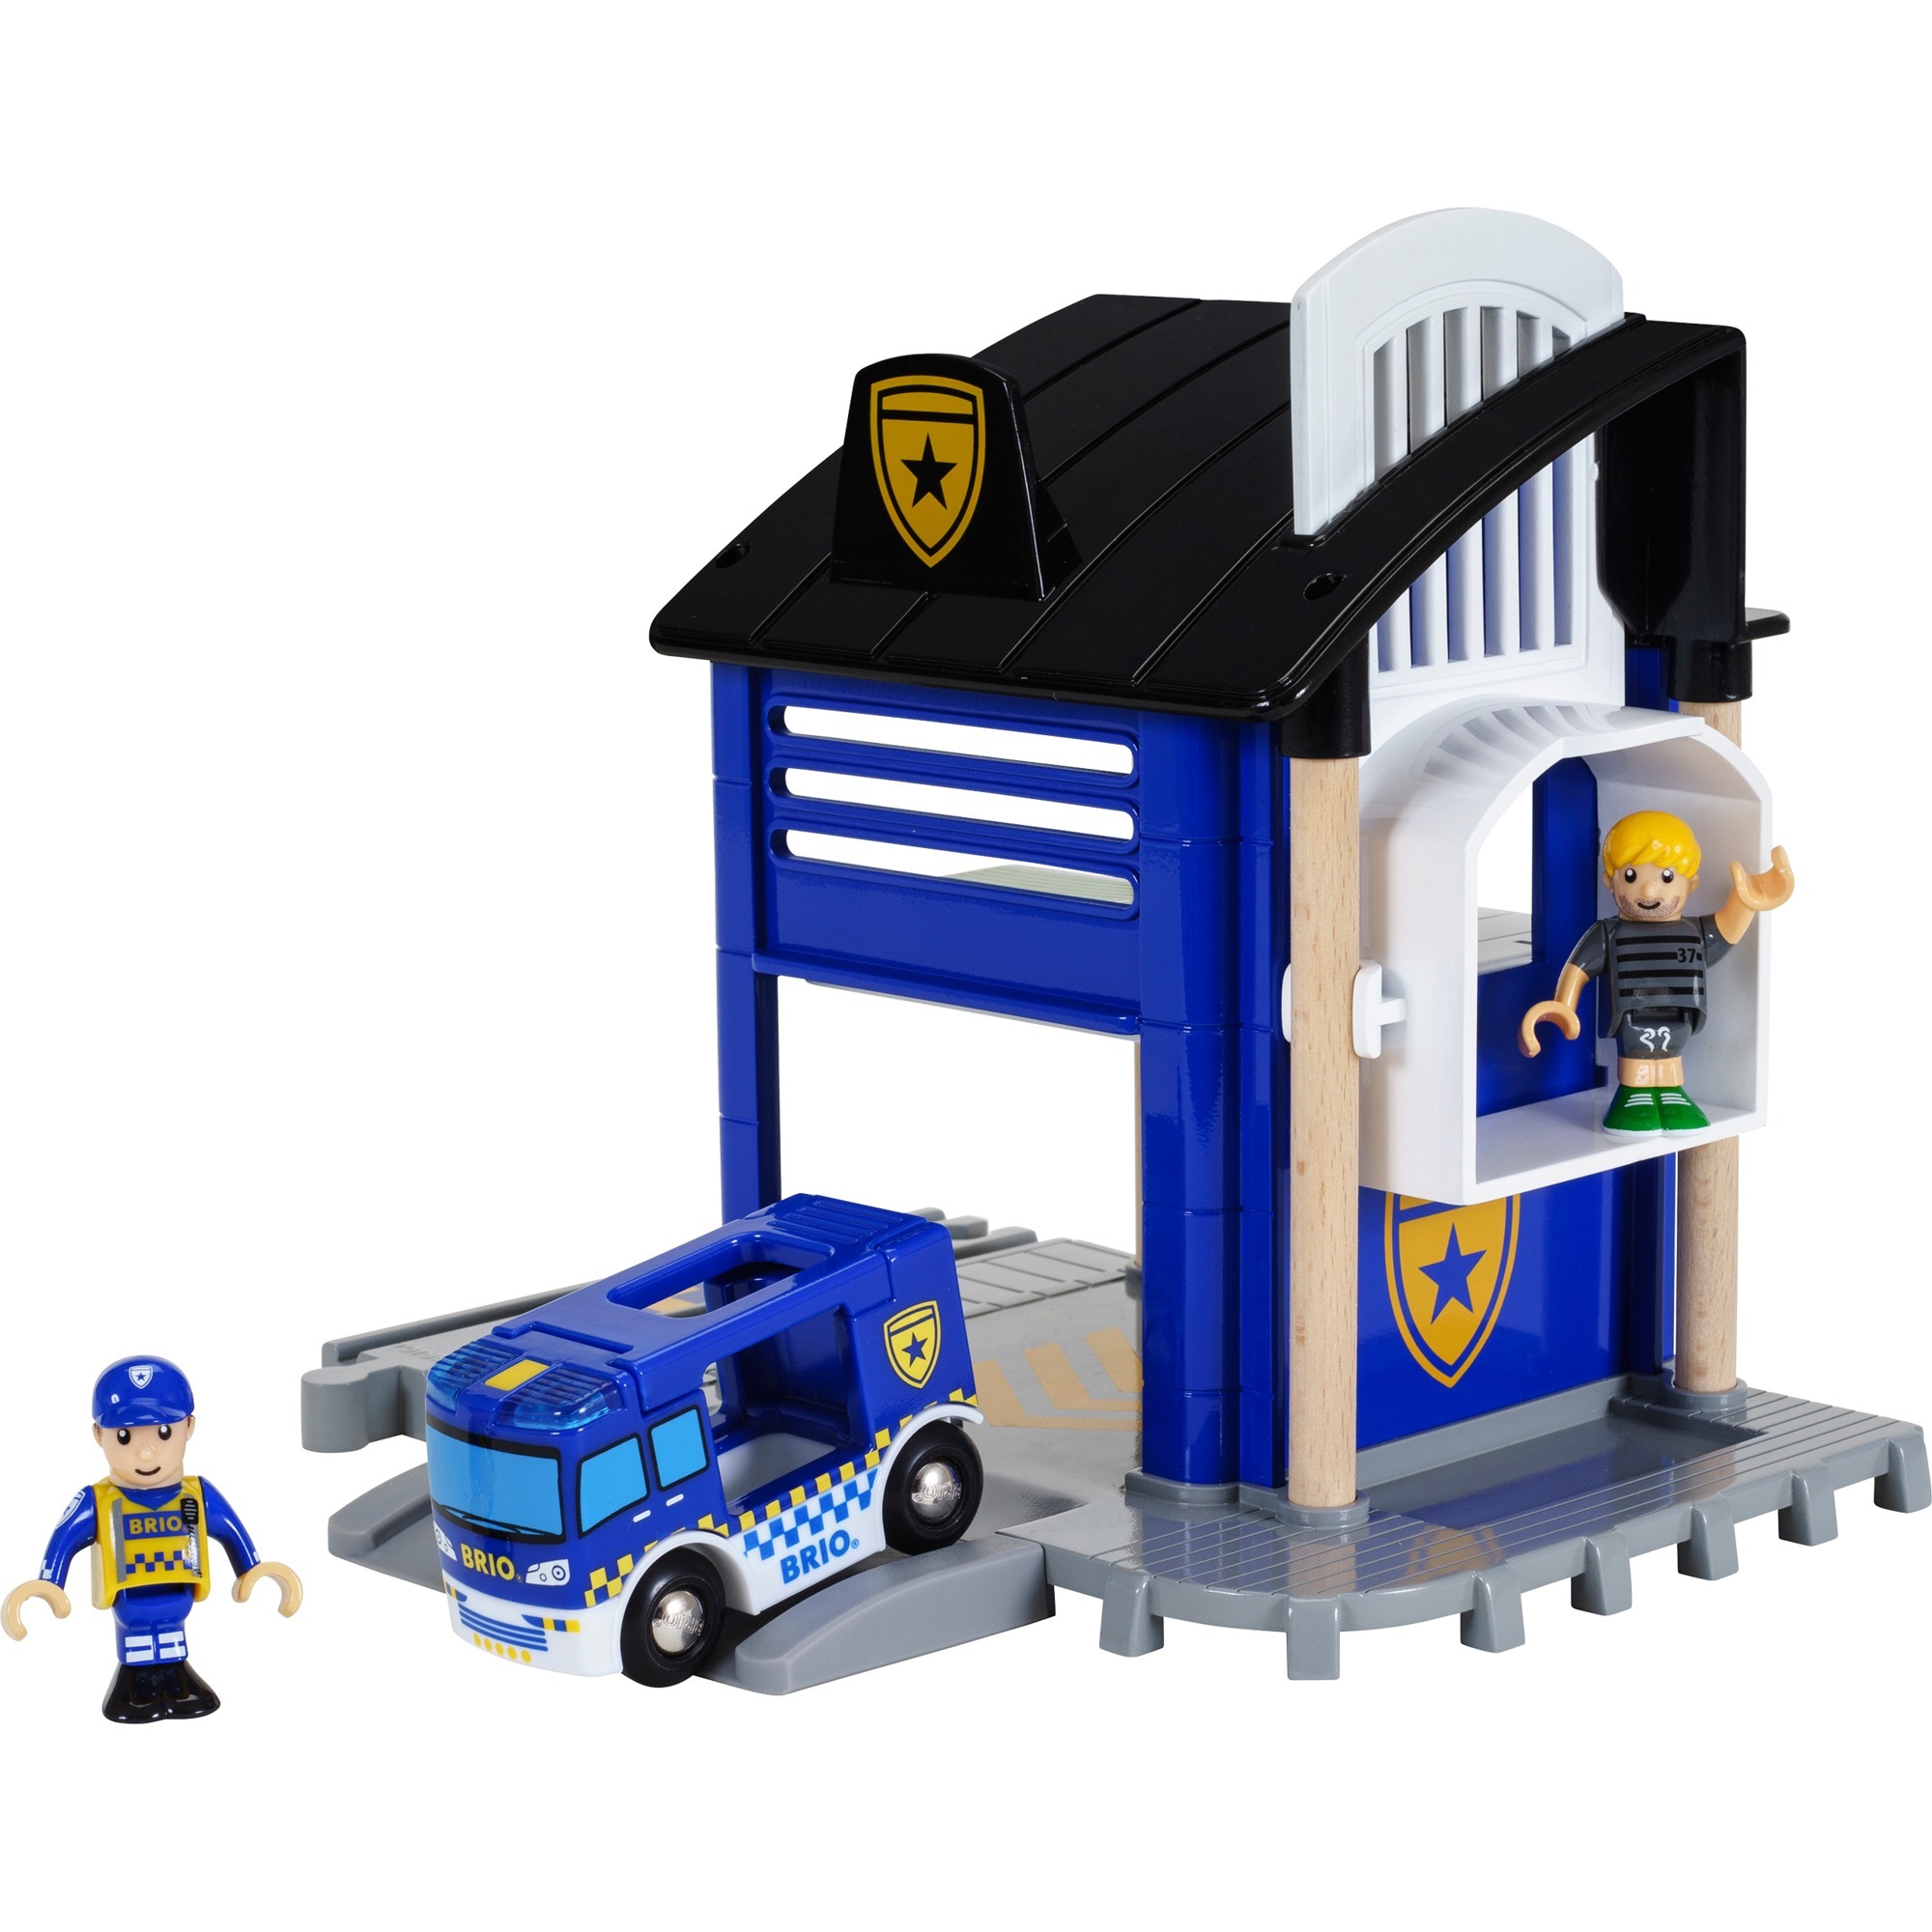 Image of Alternate - World Polizeistation mit Einsatzfahrzeug, Bahn online einkaufen bei Alternate